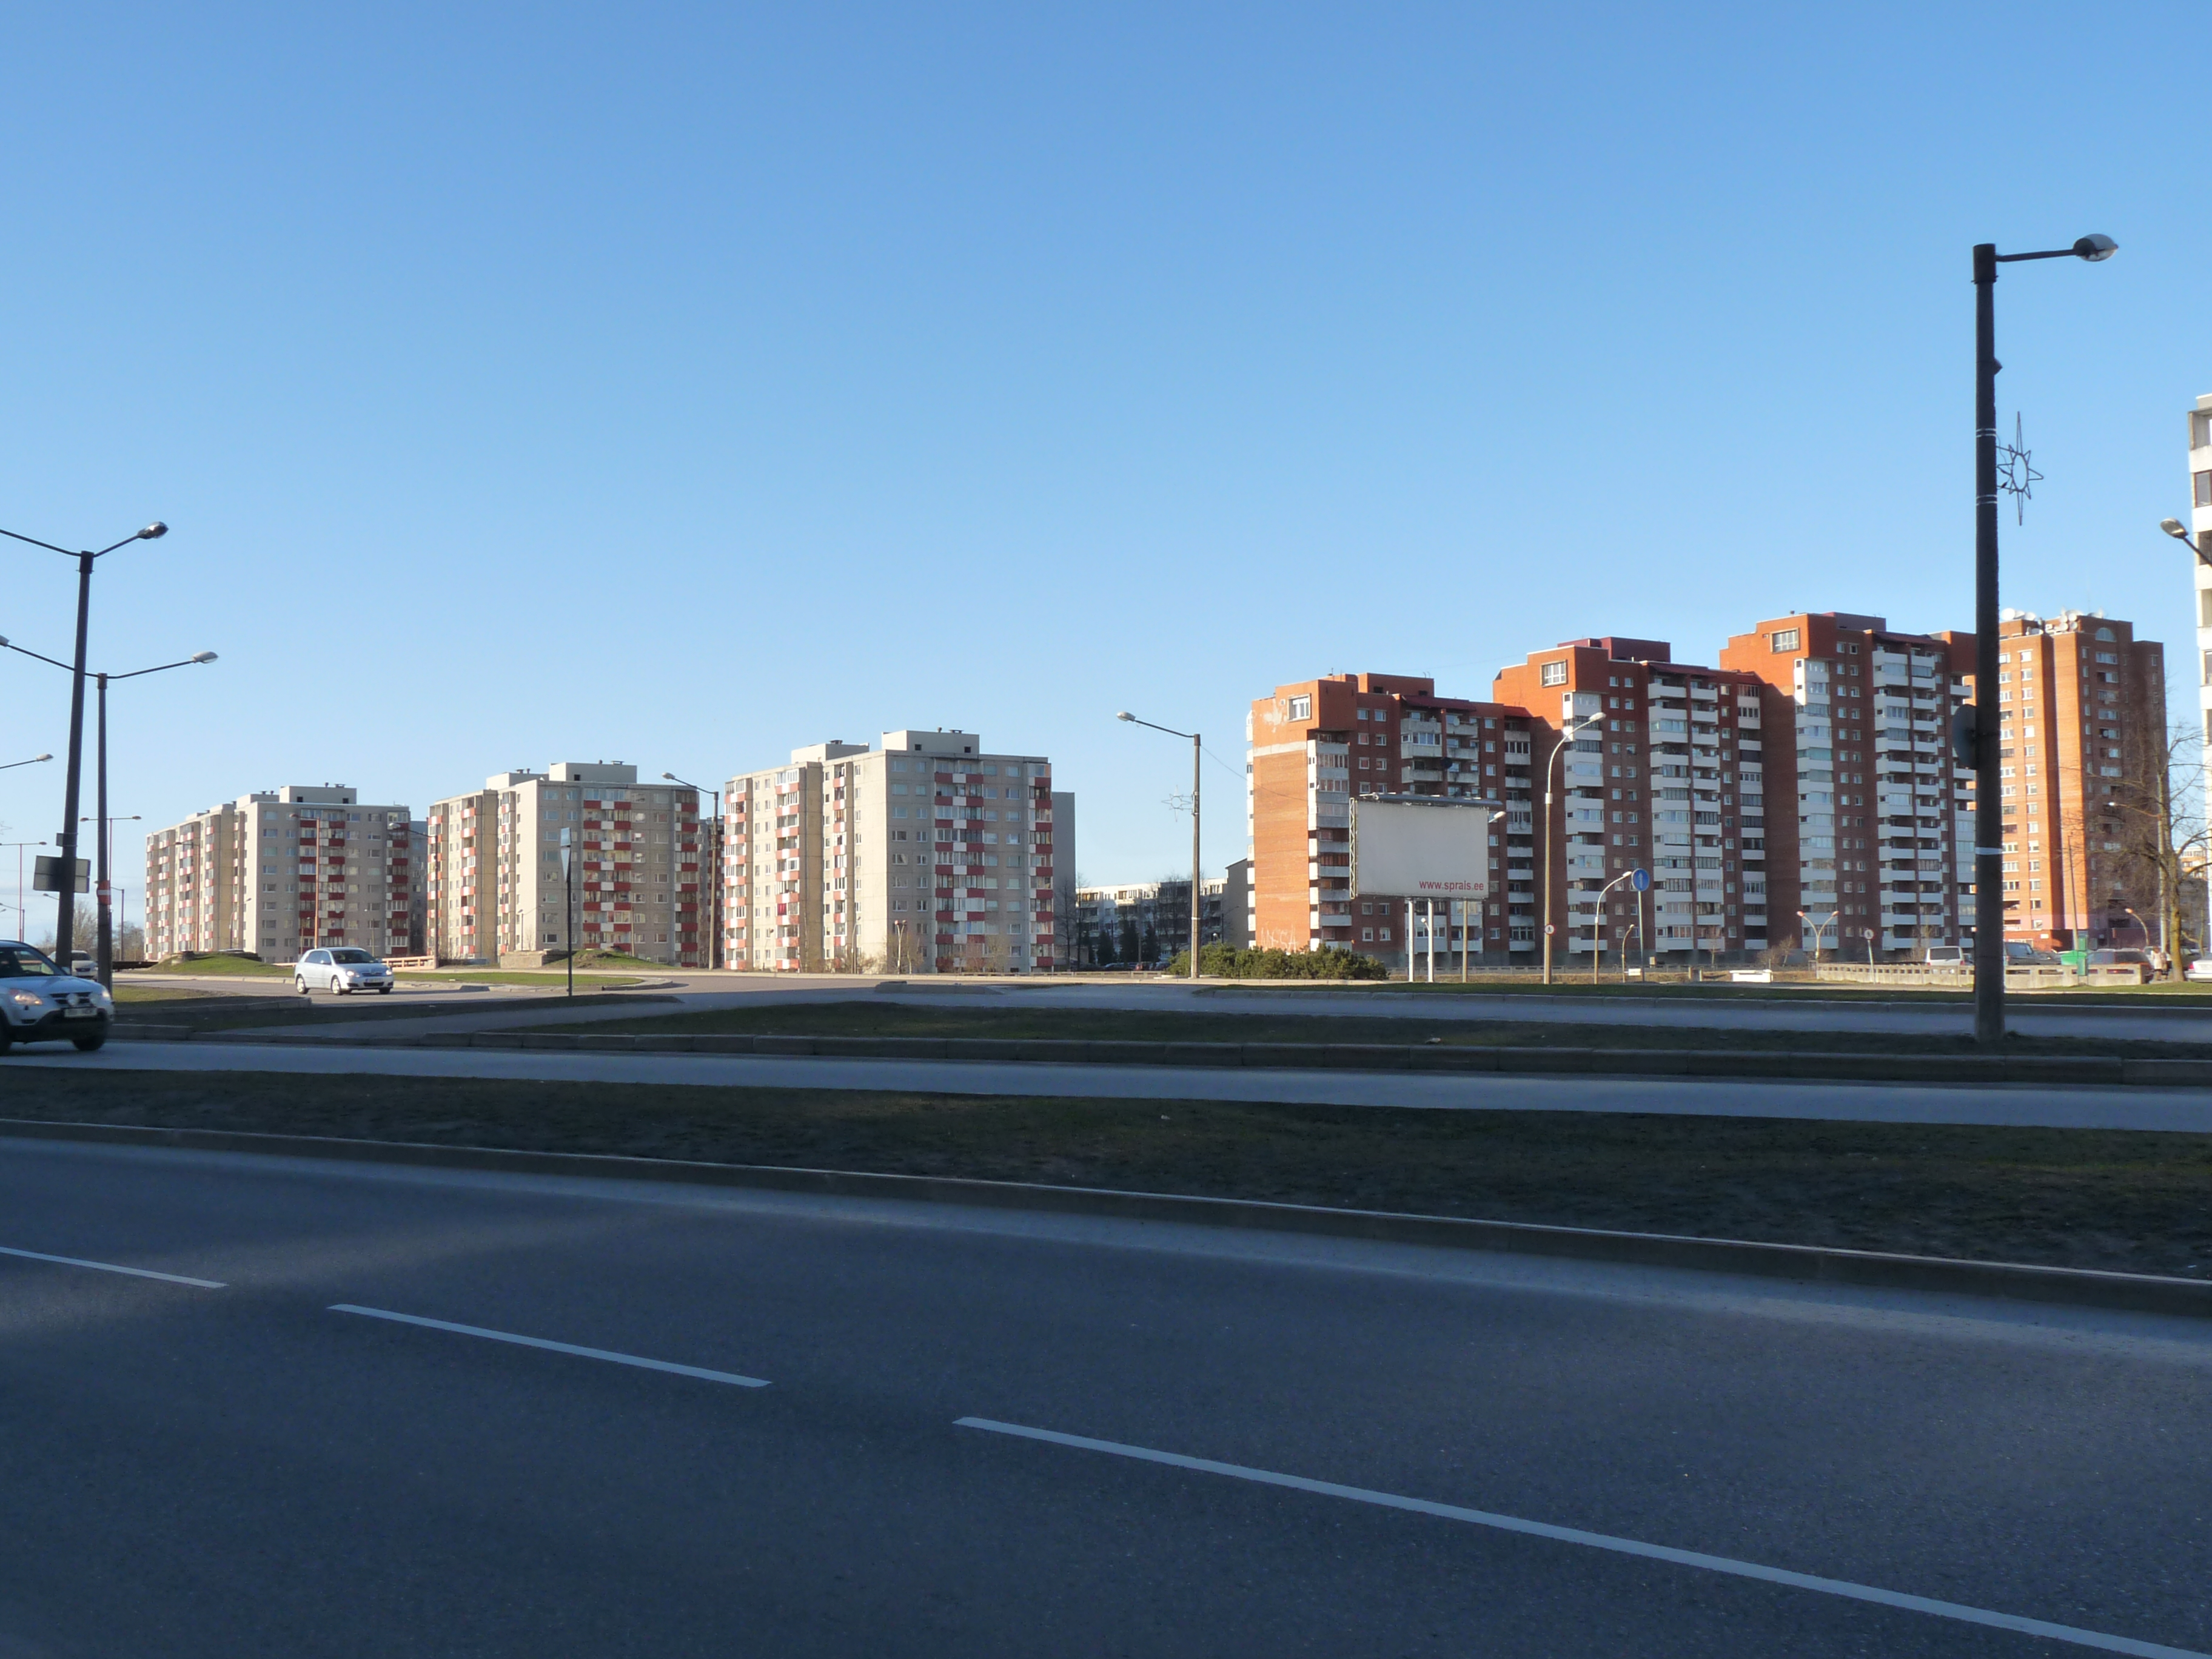 EU-EE-Tallinn-LAS-Laagna-Koorti - Apartment buildings on Koorti street